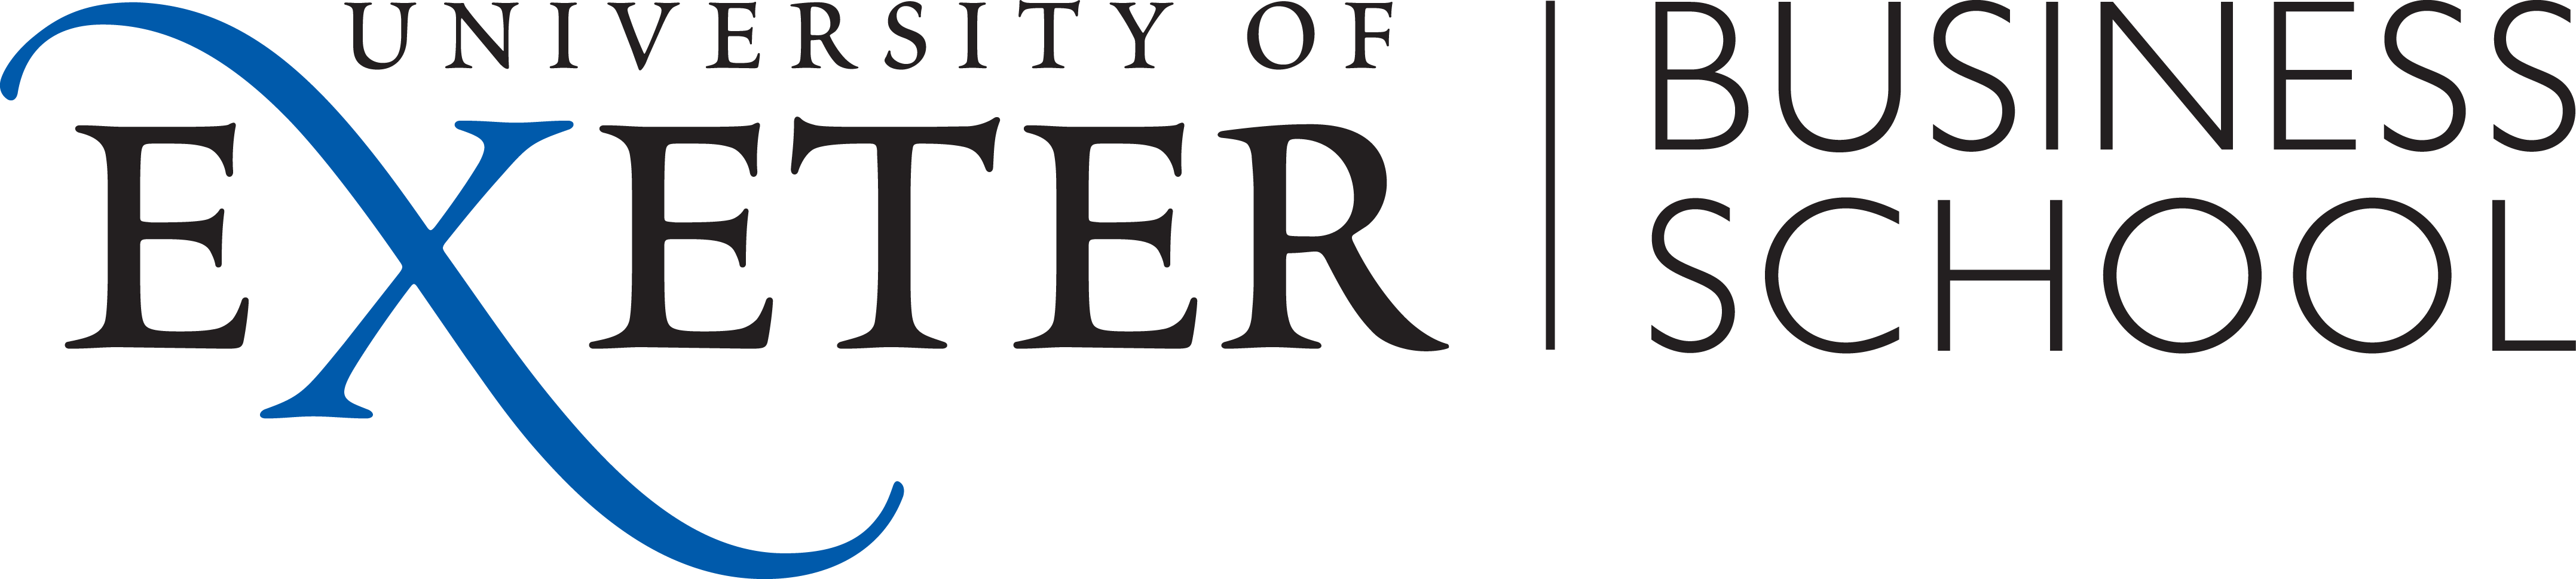 Sponsor logo University of Exeter Business School